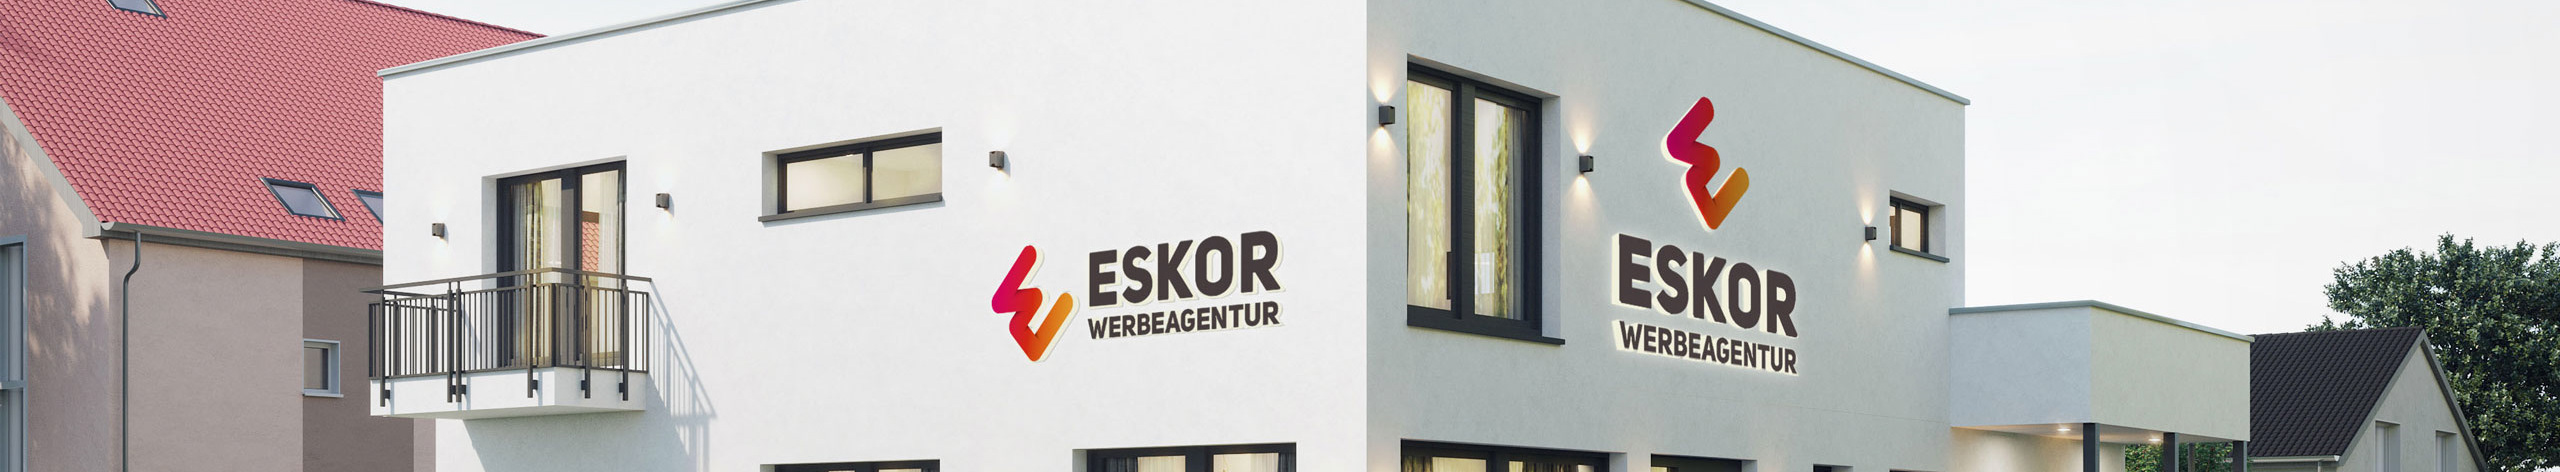 ESKOR Werbeagentur's profile banner